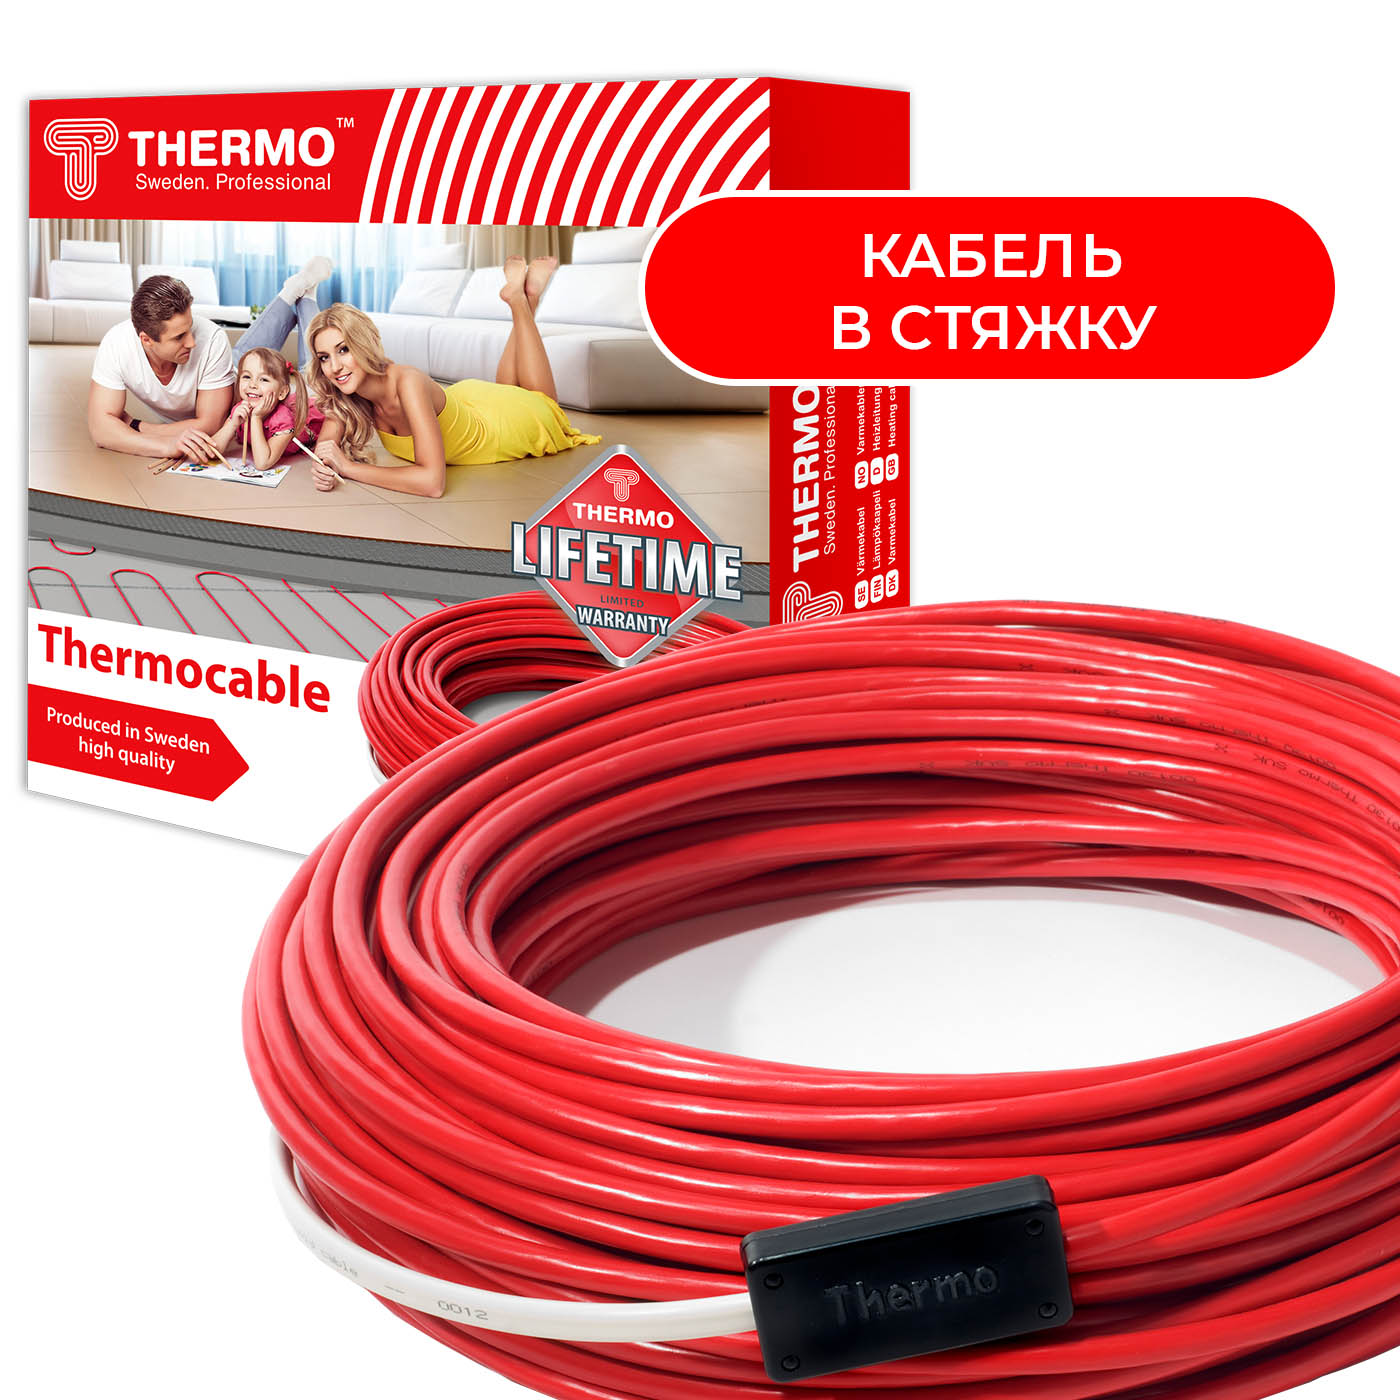 Thermocable SVK 20 нагревательный кабель в стяжку